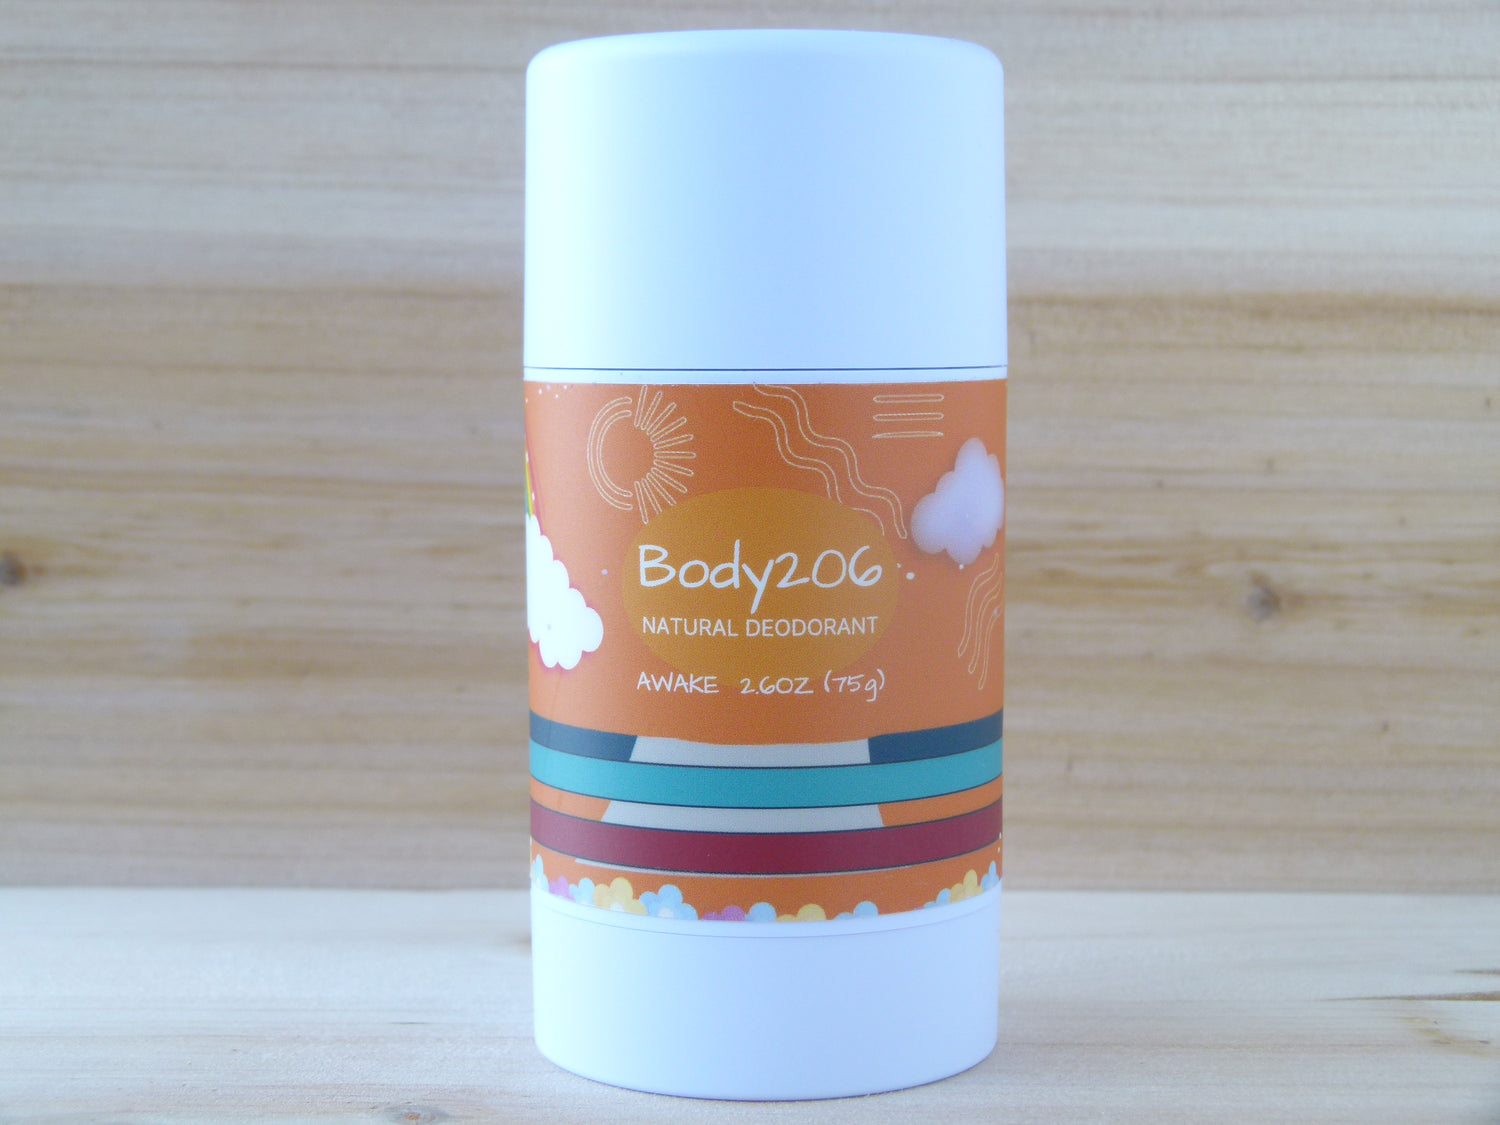 awake scent deodorant in 75 gram, 2.6 ounce container